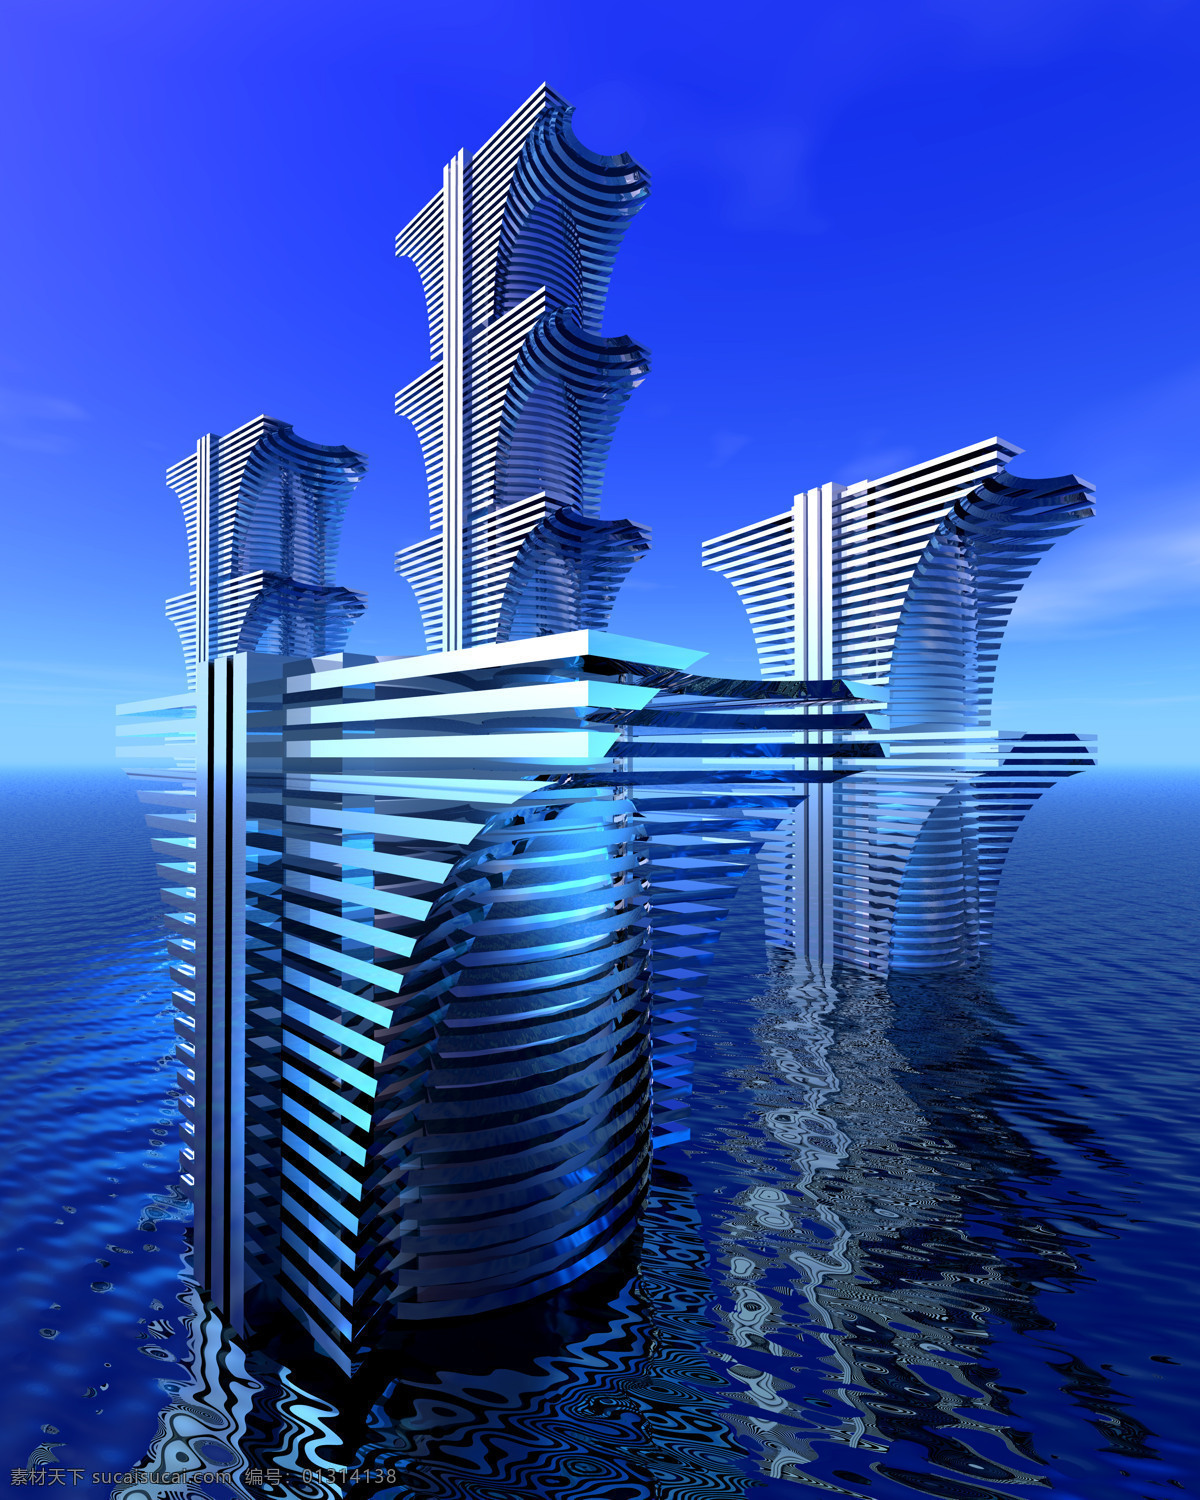 城市 城市高楼 大厦 倒影 高楼 环境设计 建筑 建筑设计 城市景 景色 写字楼 效果图 蓝色 水纹 家居装饰素材